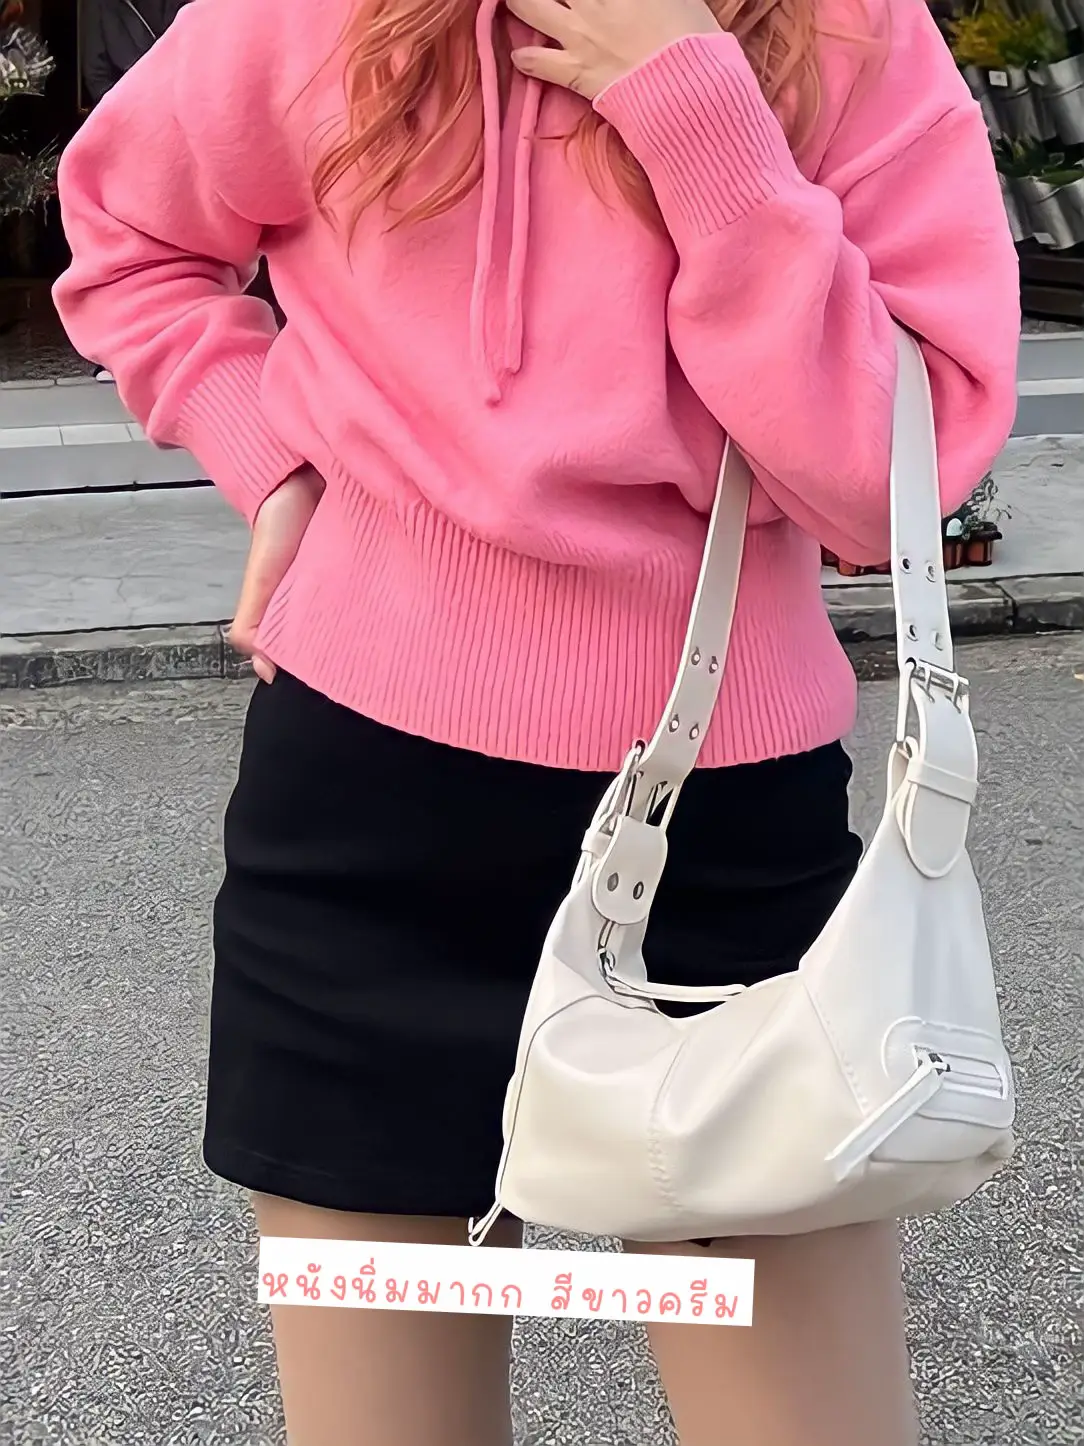 Adorable Y2k pink purse. Very Louis Vuitton esque - Depop